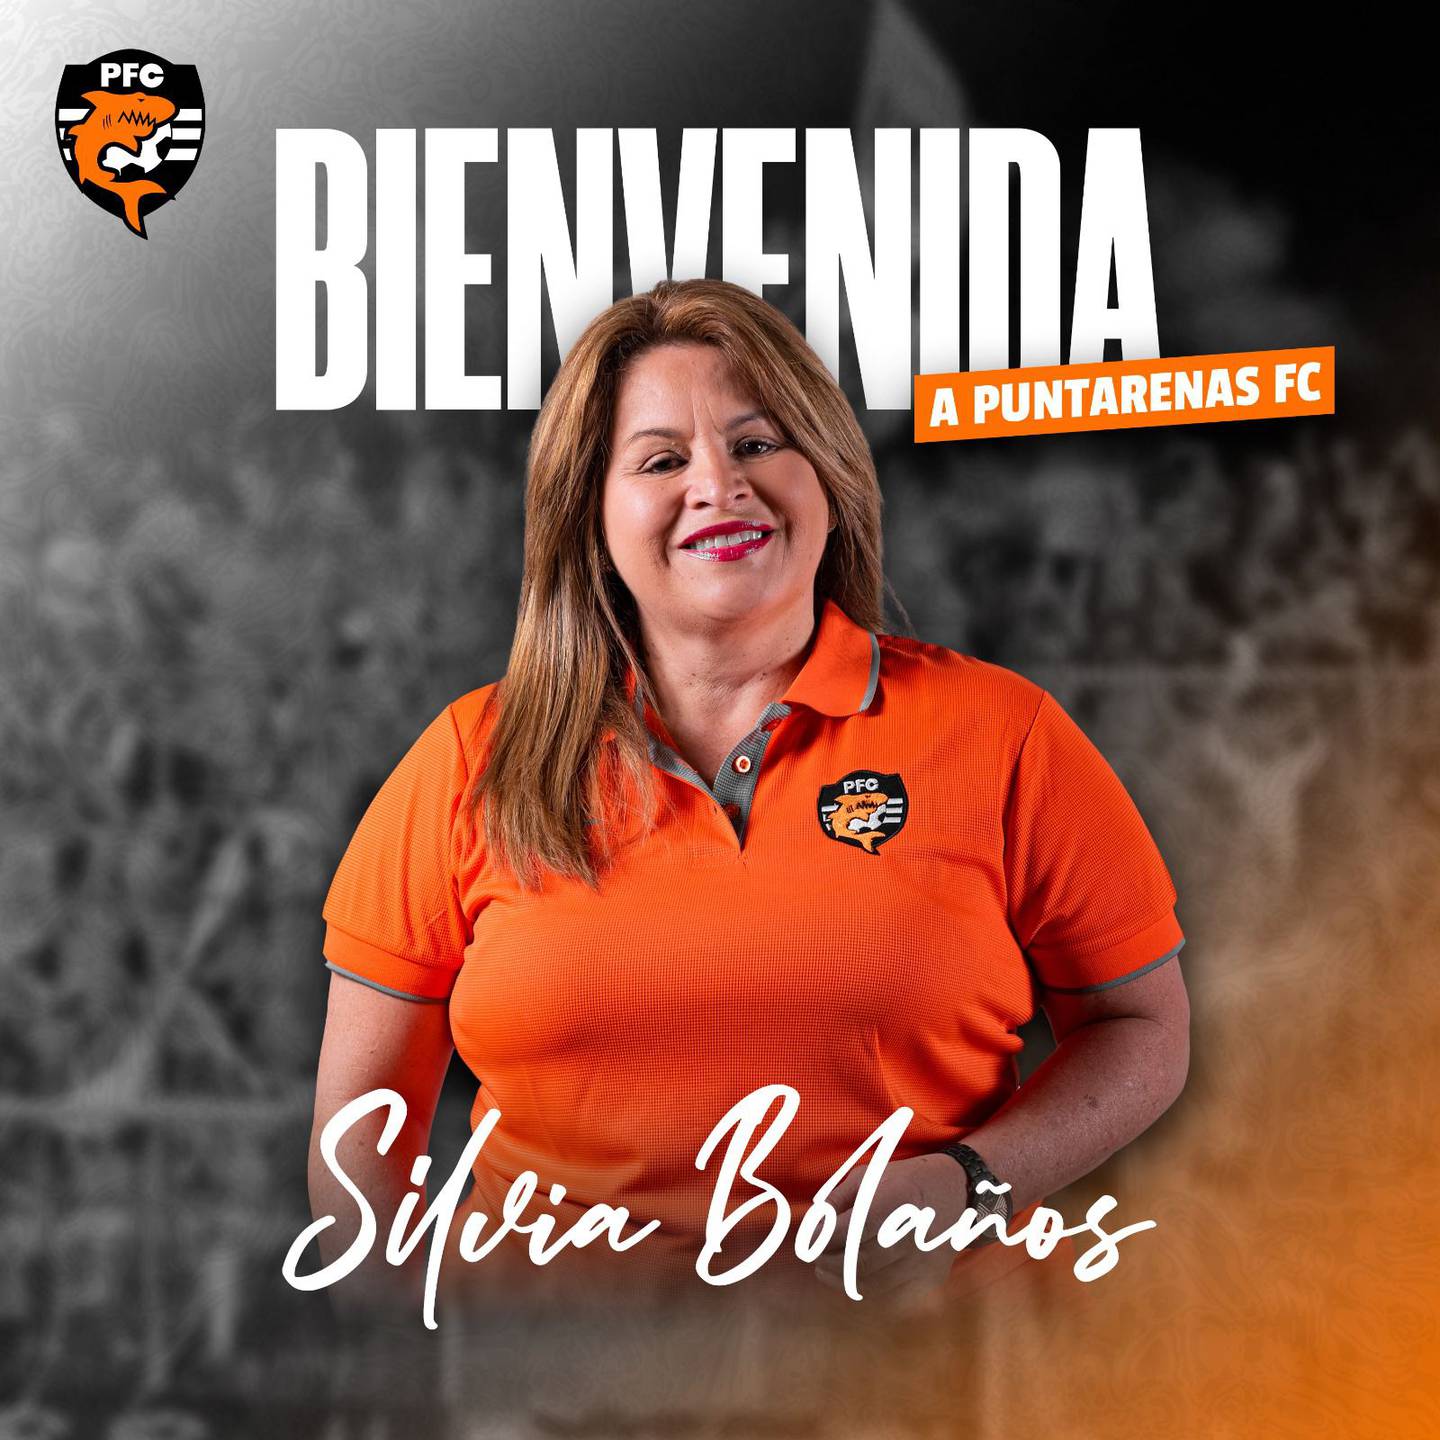 Silvia Bolaños representará al Puntarenas ante la Unafut. Prensa PFC.